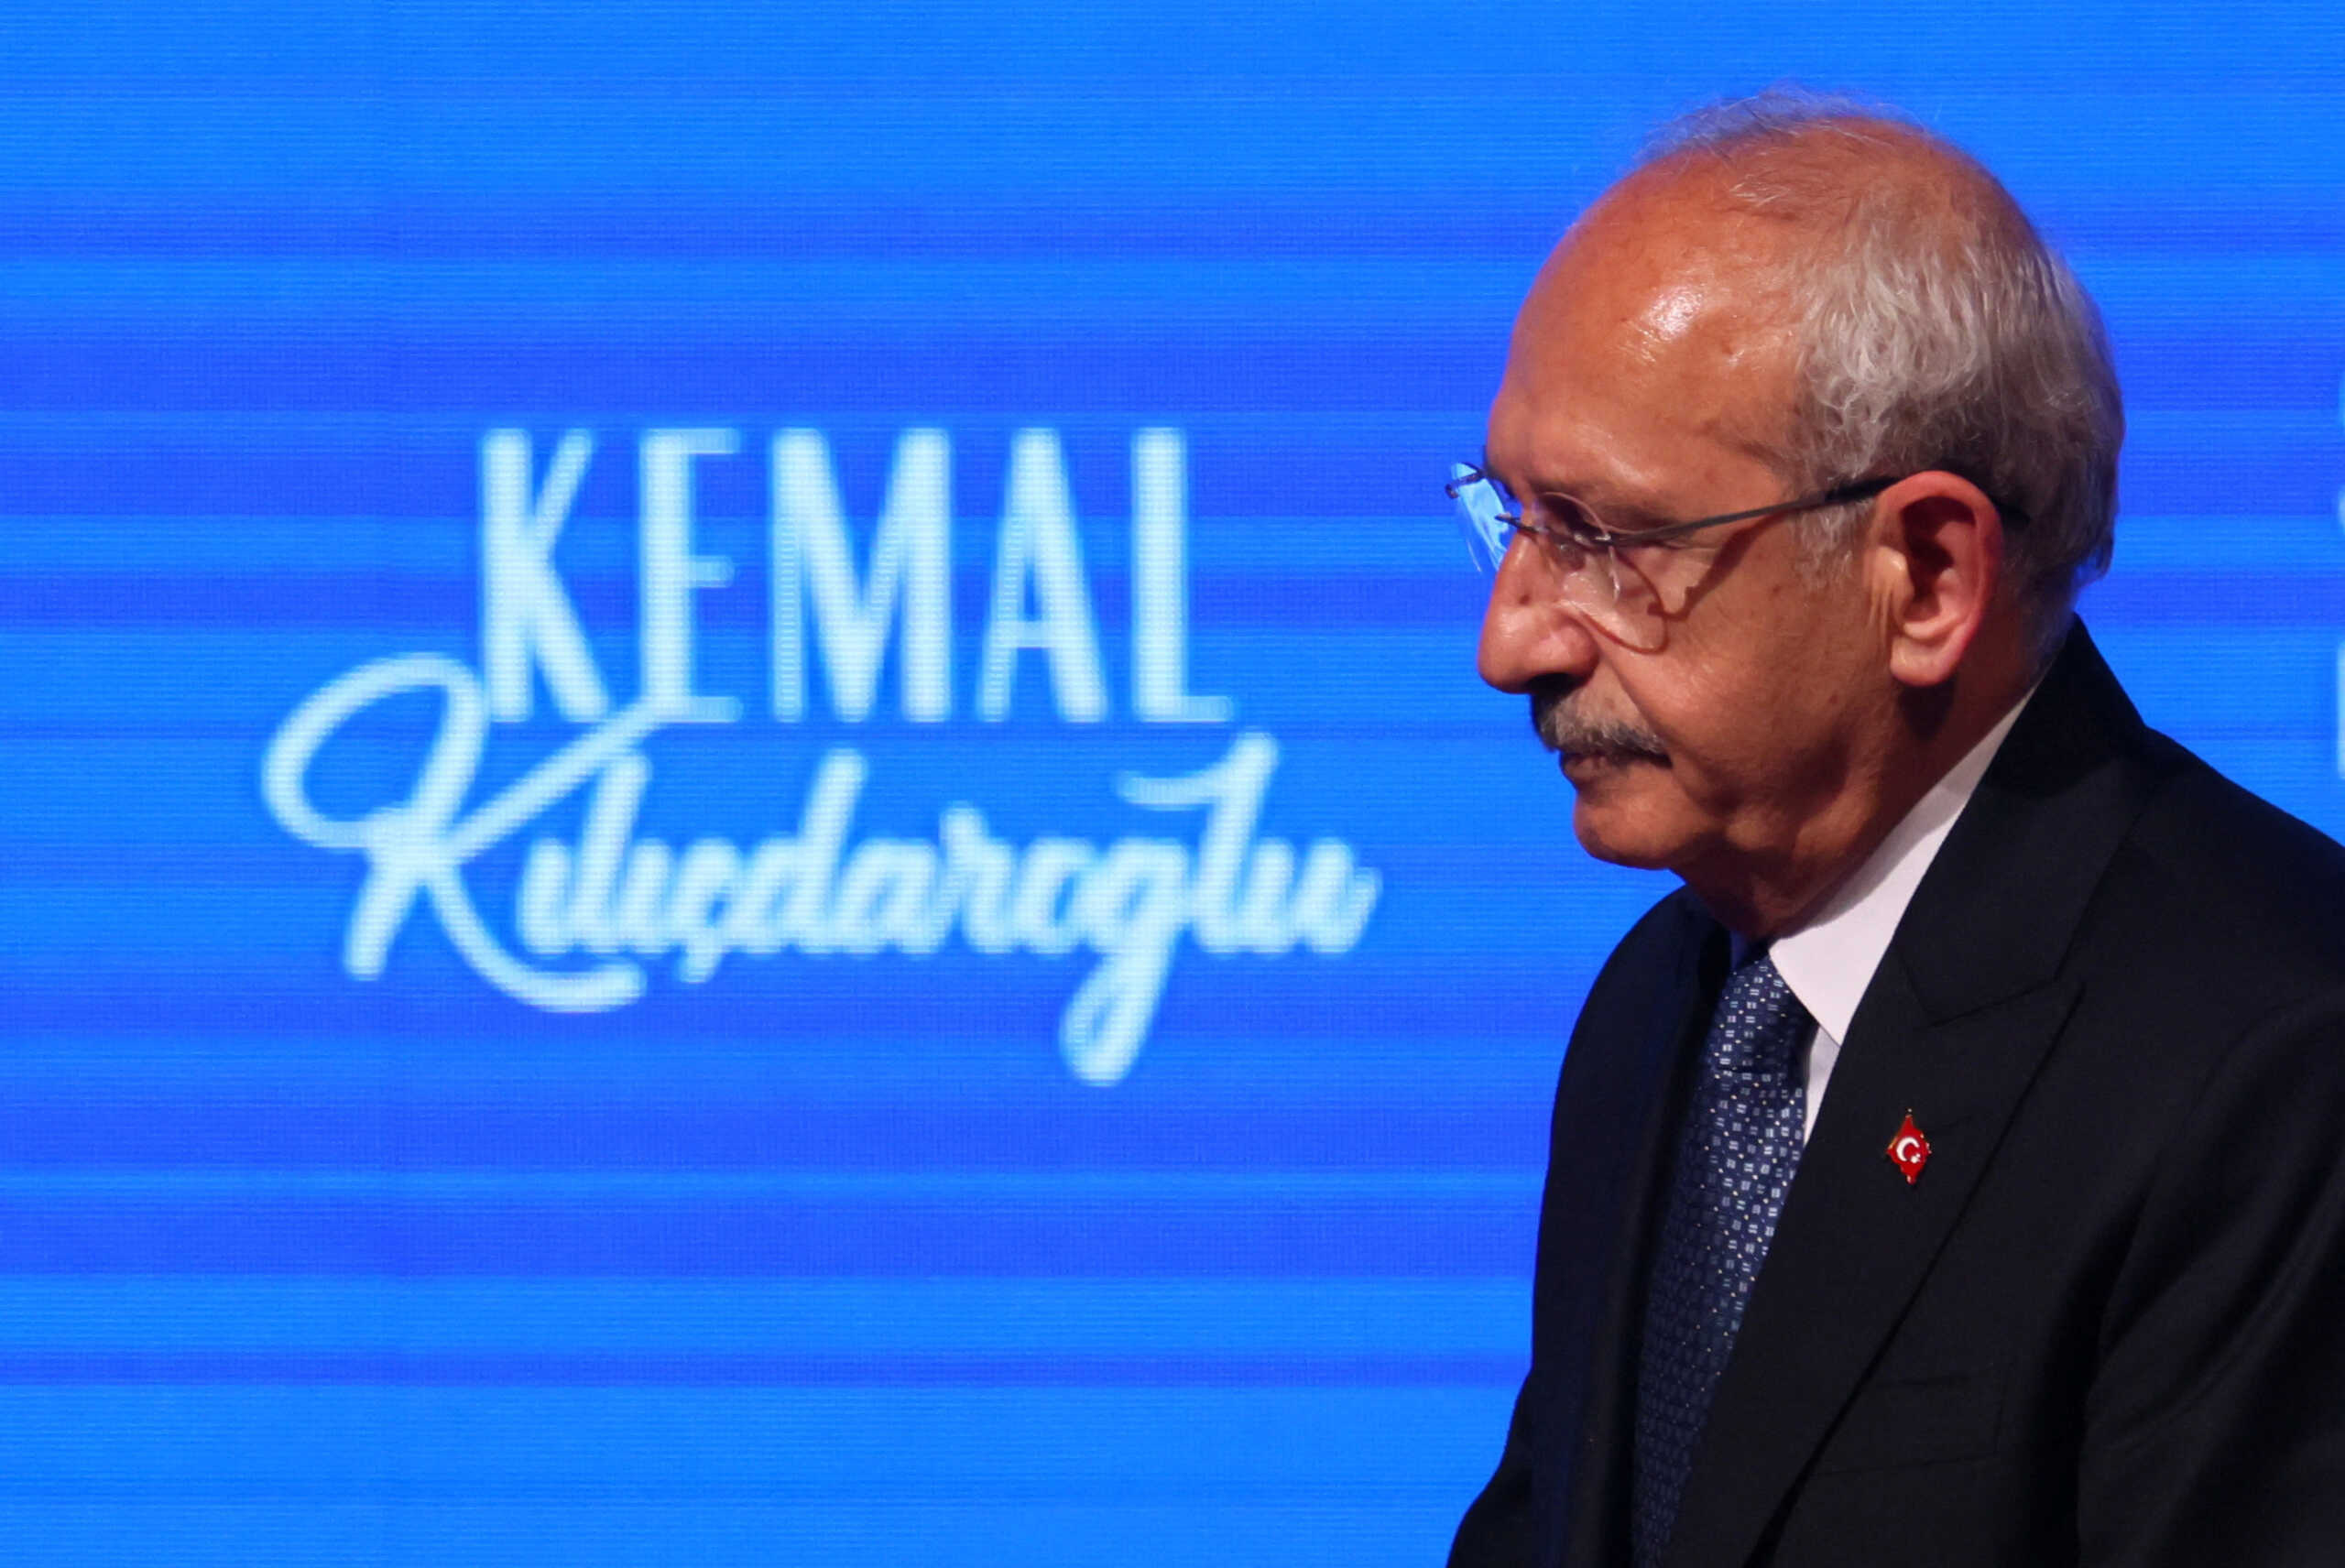 Εκλογές Τουρκία: Ο Κεμάλ Κιλιτσντάρογλου χαράζει νέα στρατηγική για τη νίκη στο δεύτερο γύρο